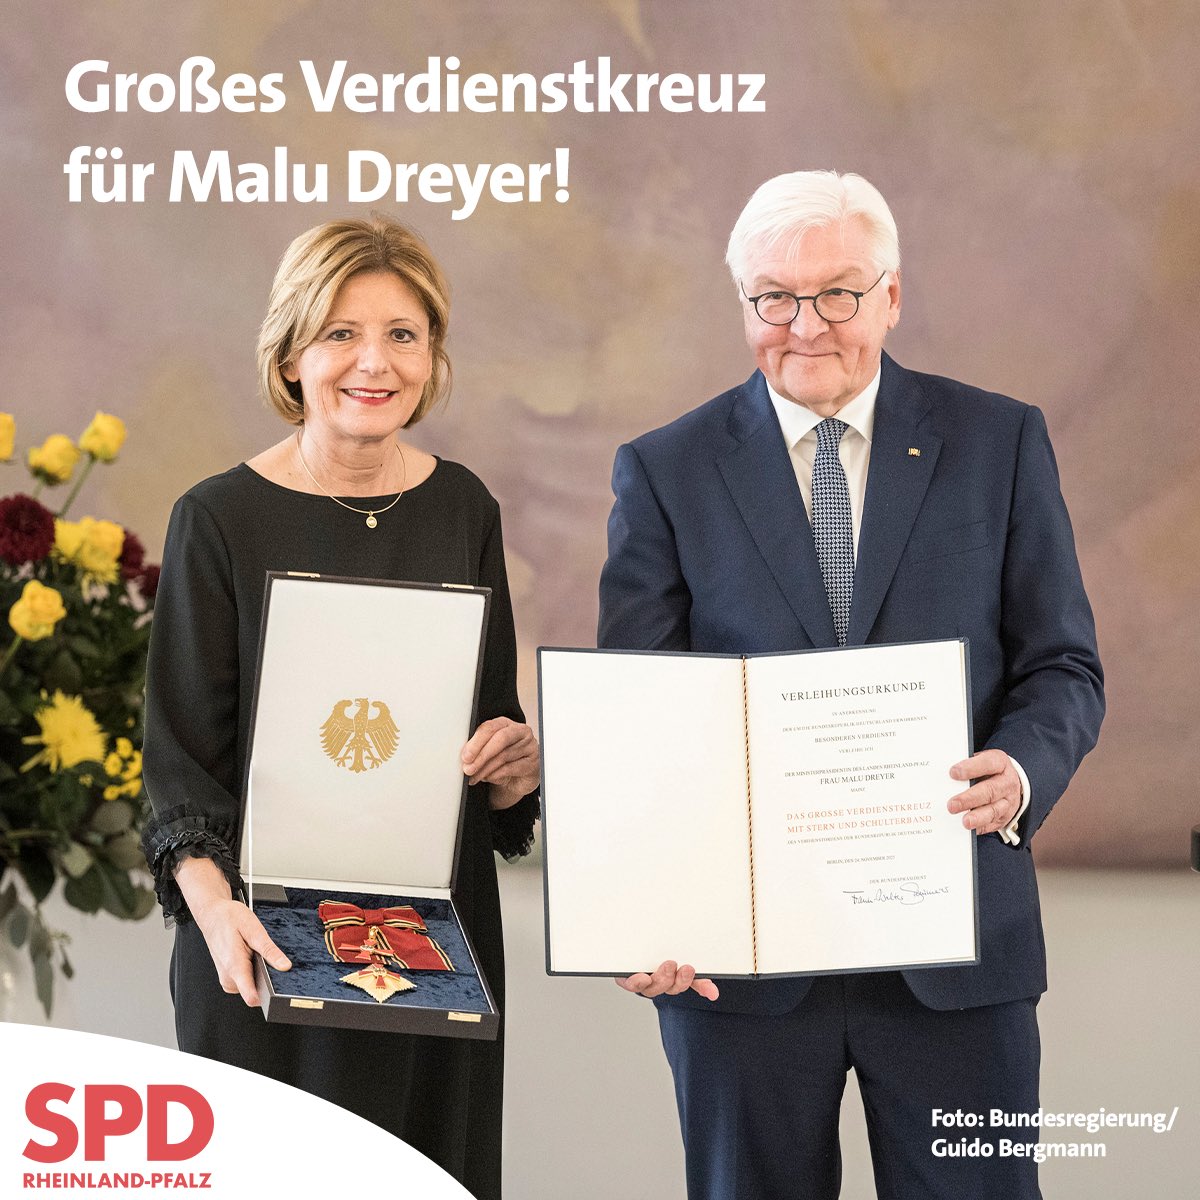 Malu Dreyer ist heute mit dem Großen Verdienstkreuz für ihre herausragenden Verdienste um die Bundesrepublik Deutschland ausgezeichnet worden. Der Landesverband Rheinland-Pfalz gratuliert herzlich!